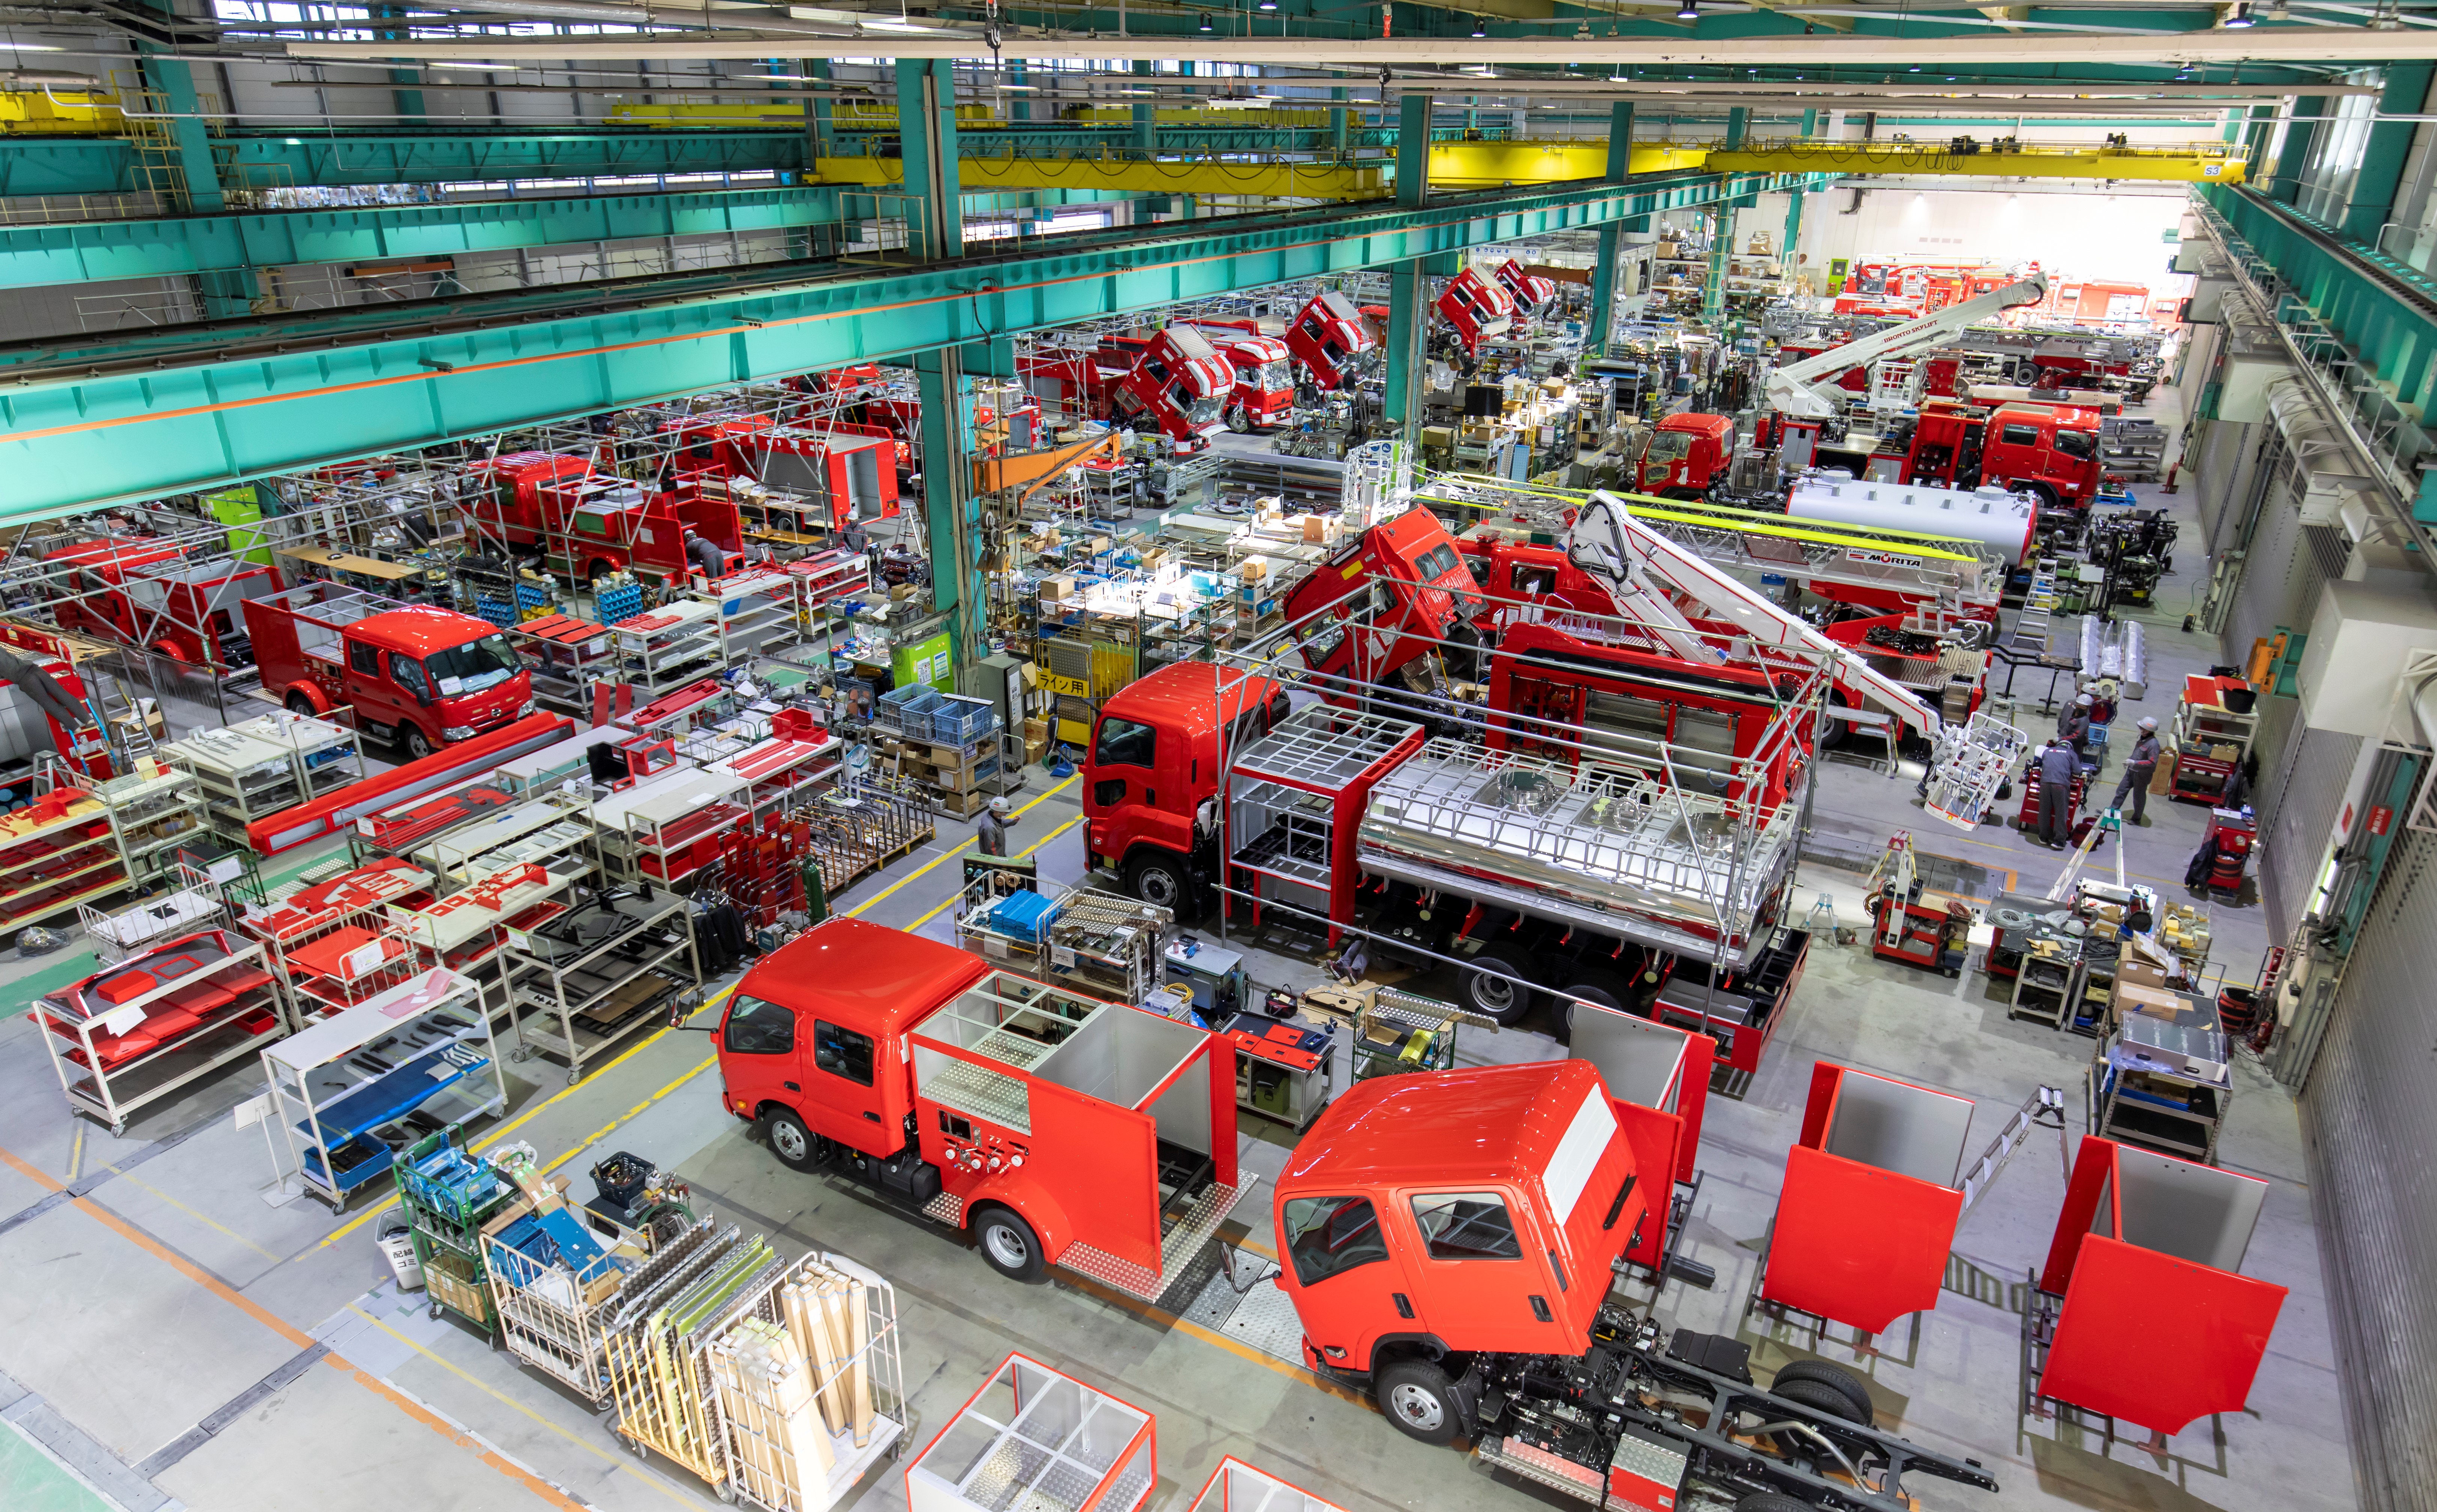 消防車のモリタ 未来の消防車 のイラストを募集 Sankeibiz サンケイビズ 自分を磨く経済情報サイト